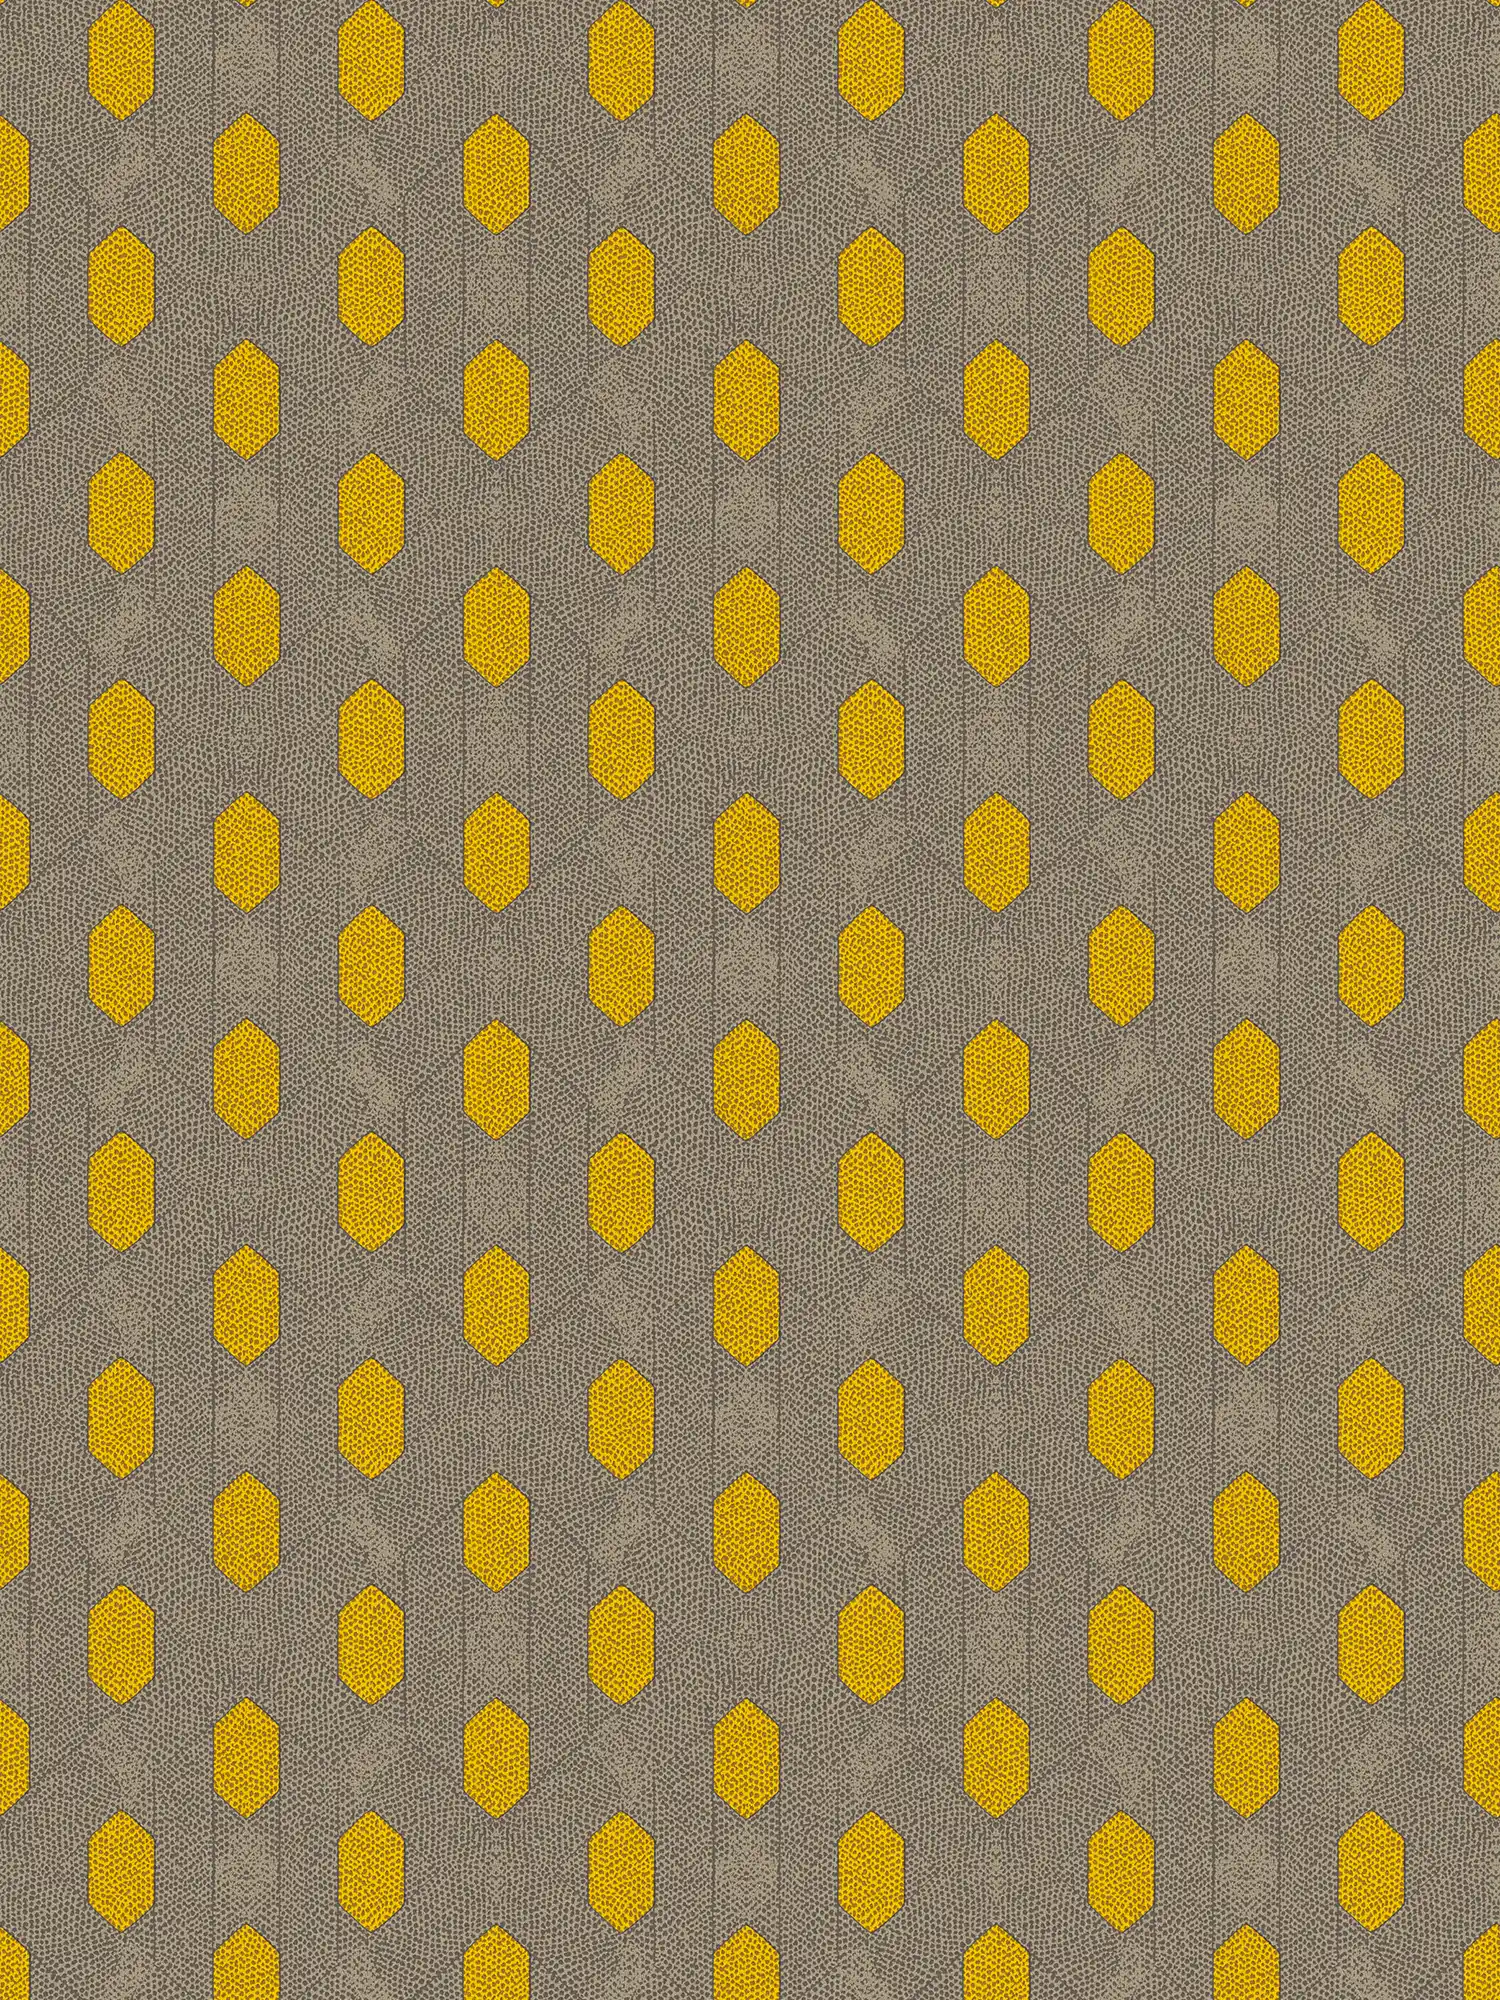 Papel pintado no tejido con motivos geométricos de puntos - amarillo, gris, marrón
